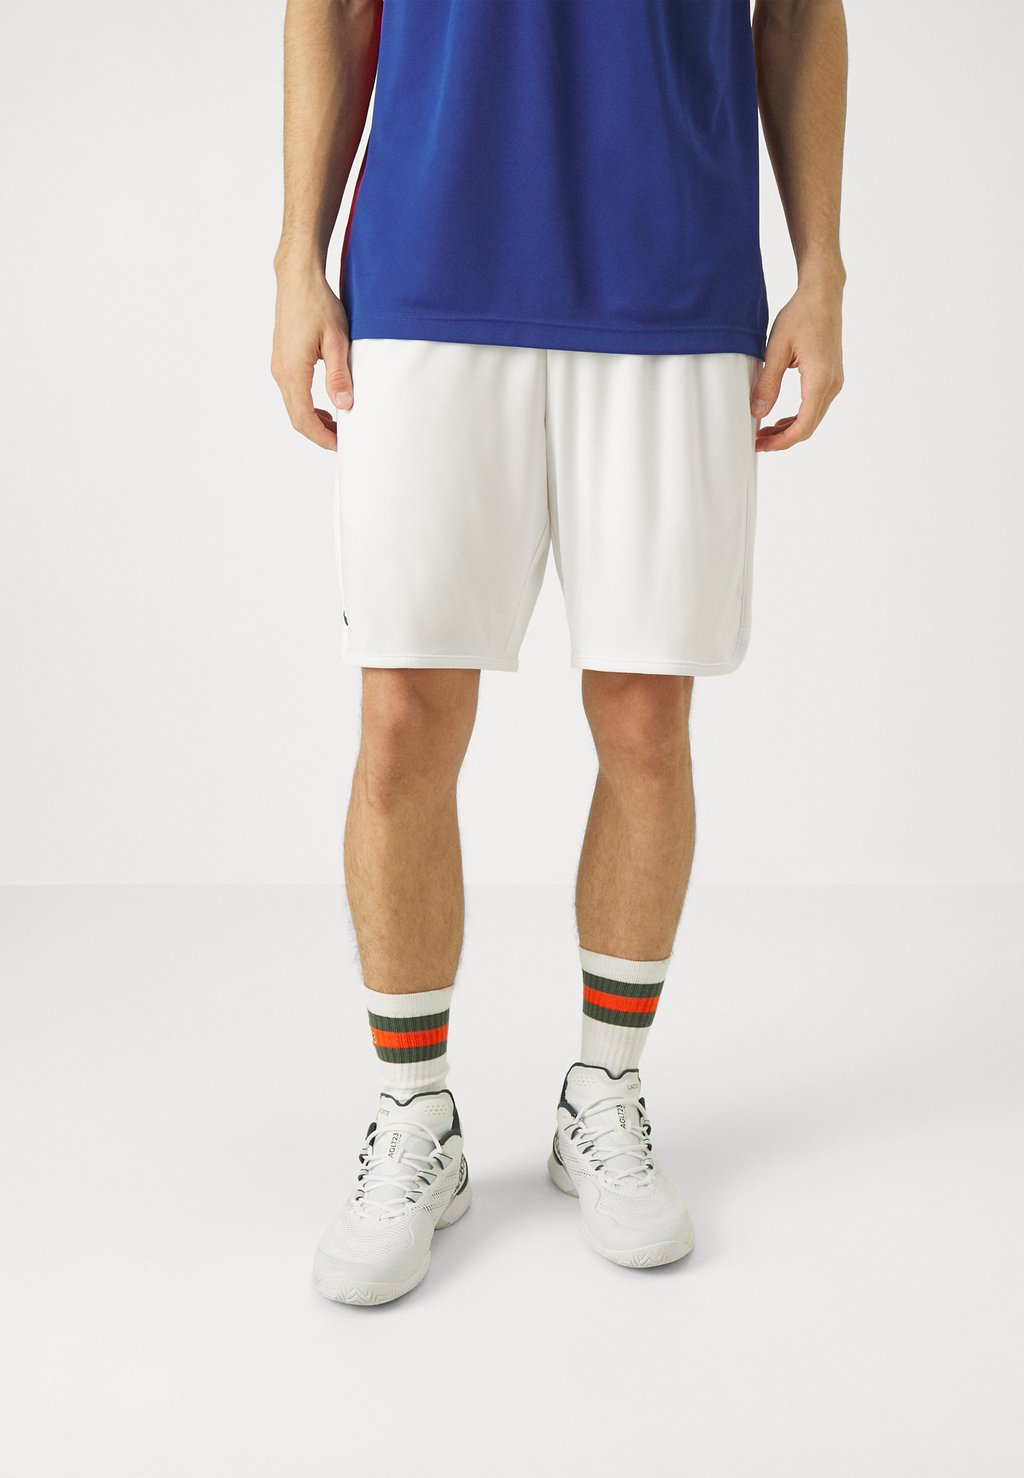 Спортивные шорты Shorts Medvedev Lacoste, белый спортивные шорты tennis shorts heritage lacoste белый